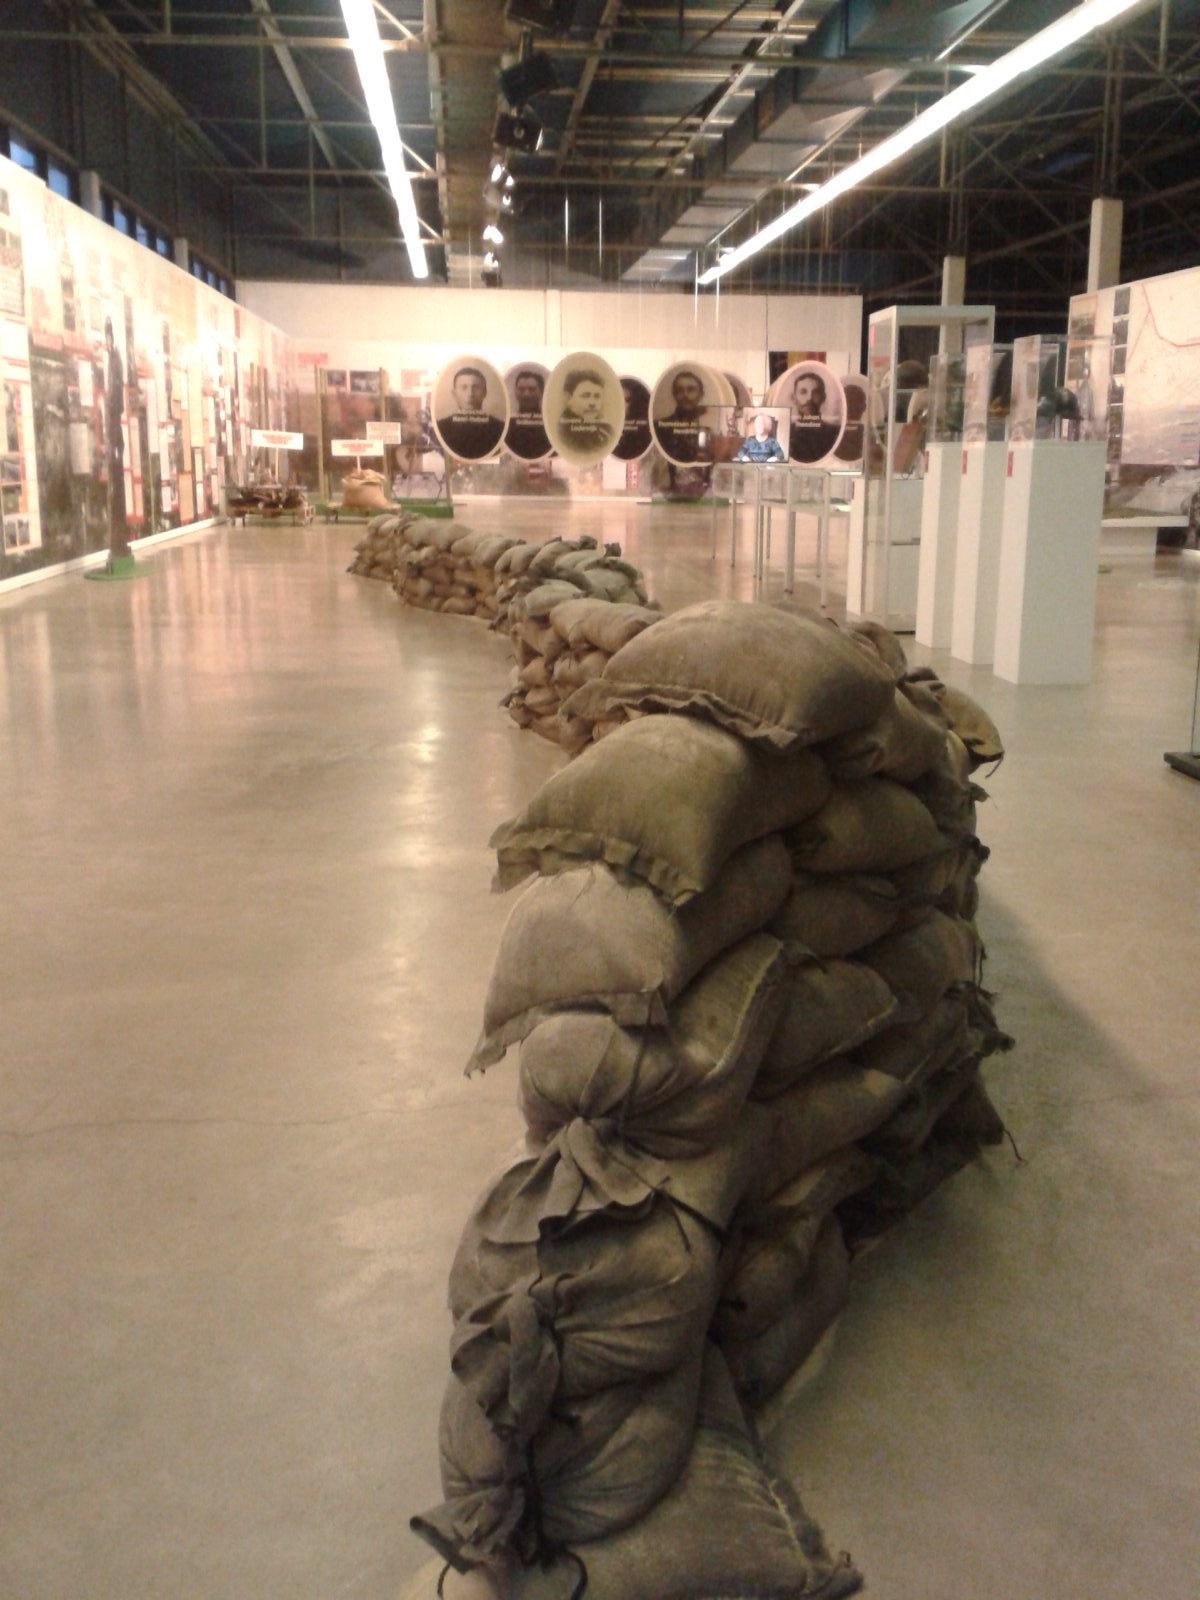 Totaaloverzicht van de tentoonstelling Maasmechelen in de WOI.